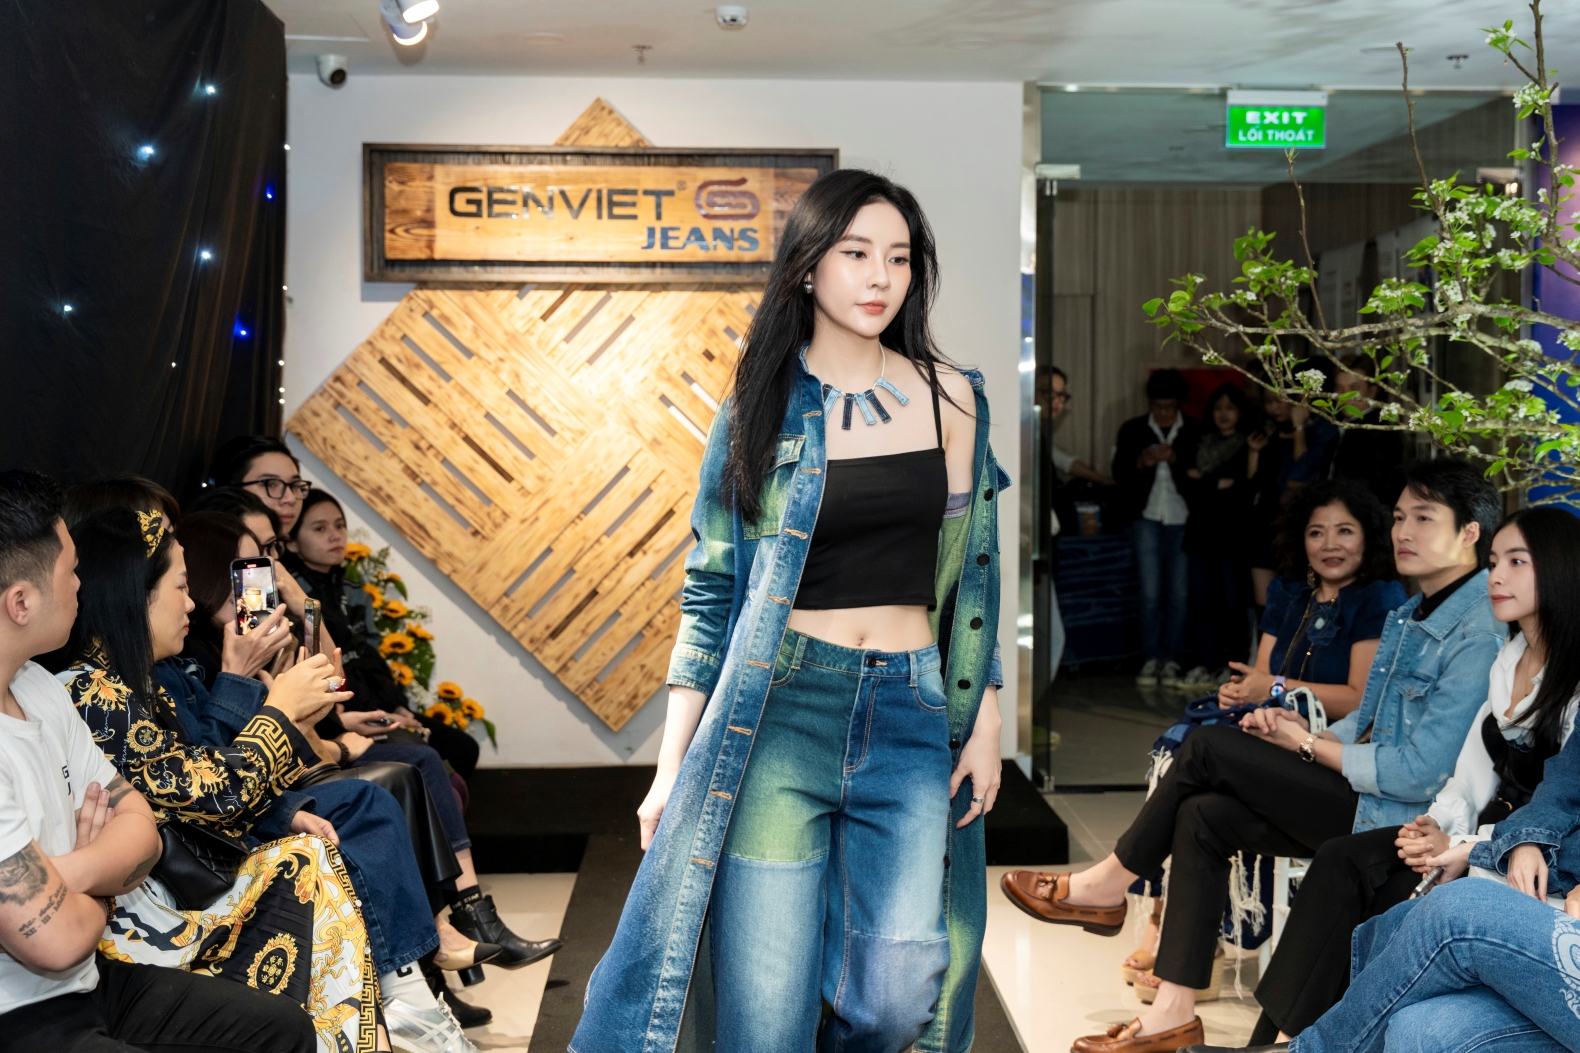 Độc lạ quần jeans khổng lồ nặng hơn 150kg do 1 thương hiệu Việt tạo ra, được treo ở 1 nơi 